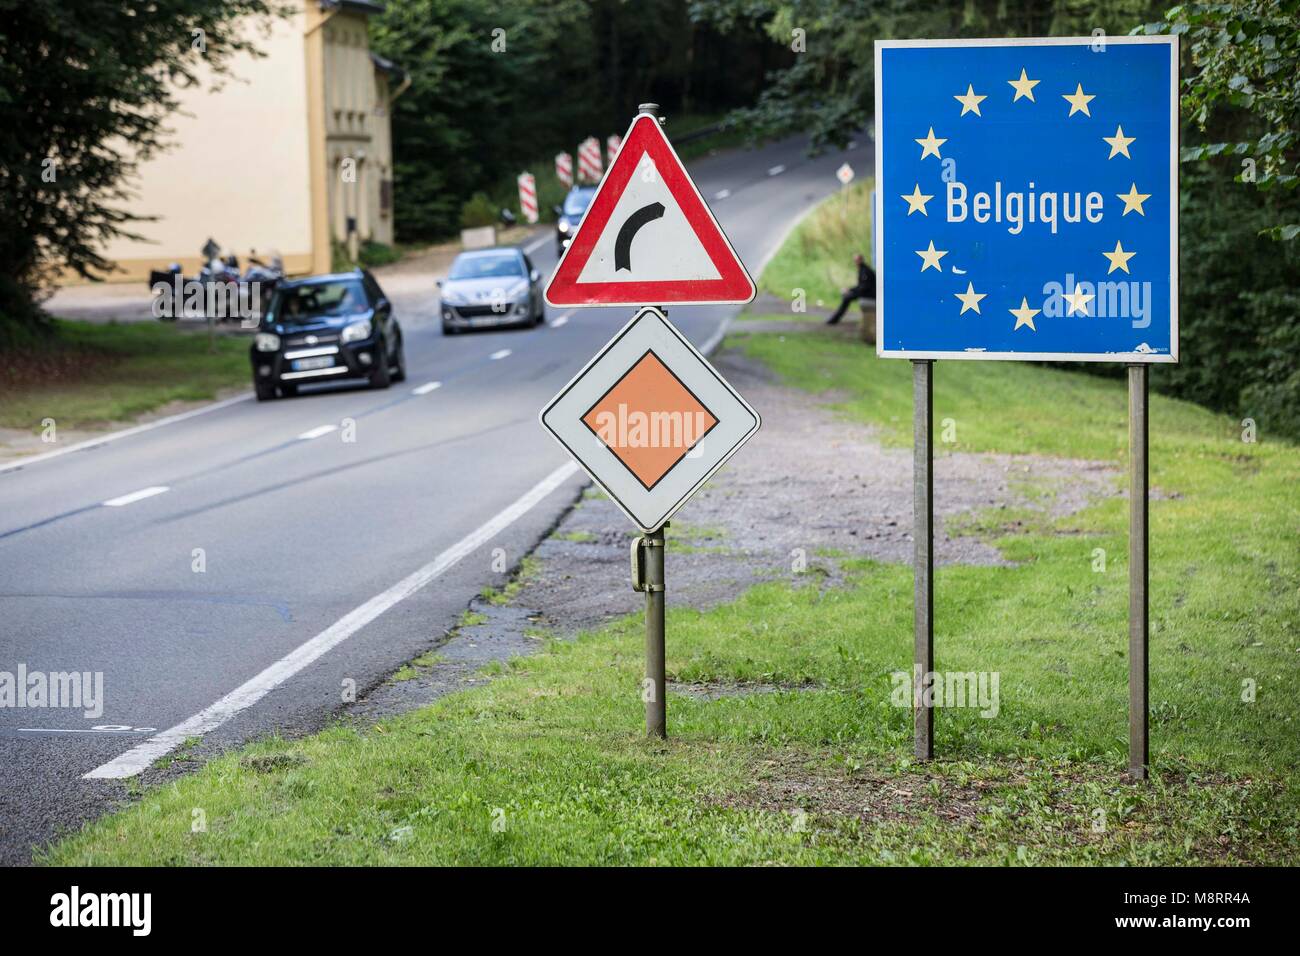 Ein blaues Schild mit dem Schriftzug Belgique umrandet von goldenen UE-Sternen symbolisiert den Grenzübertritt nach Belgien auf dieser Landstrasse en Foto de stock